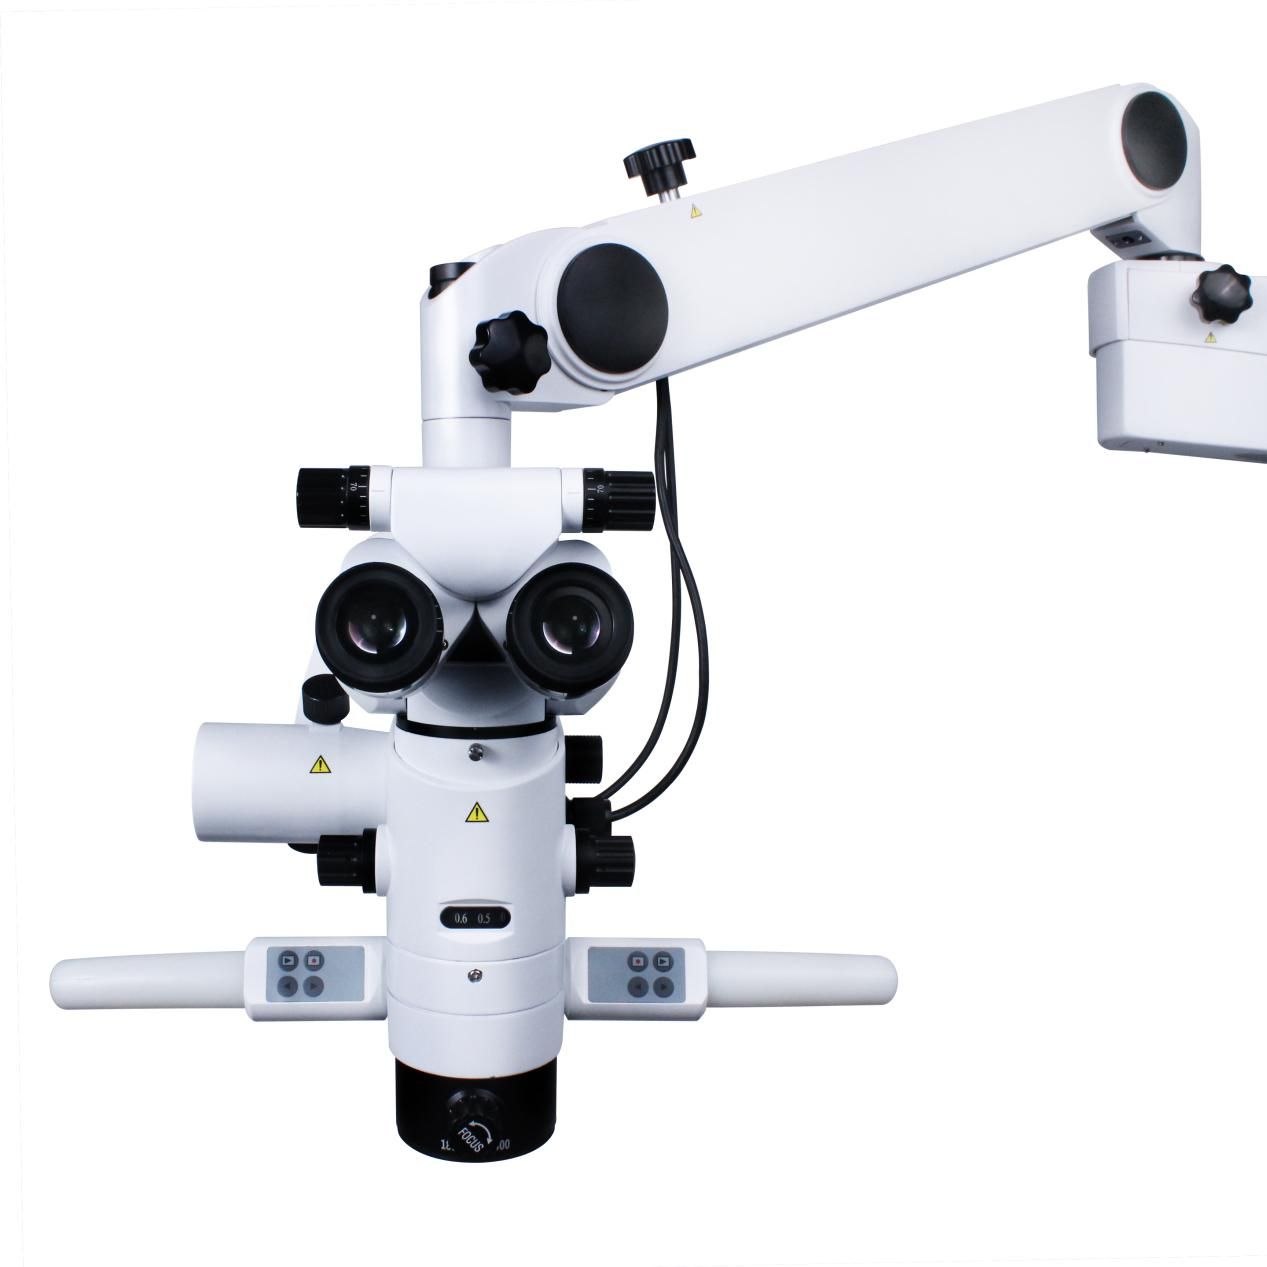 ASOM Series Microscope - Fanatsarana ny fomba fitsaboana marina tsara